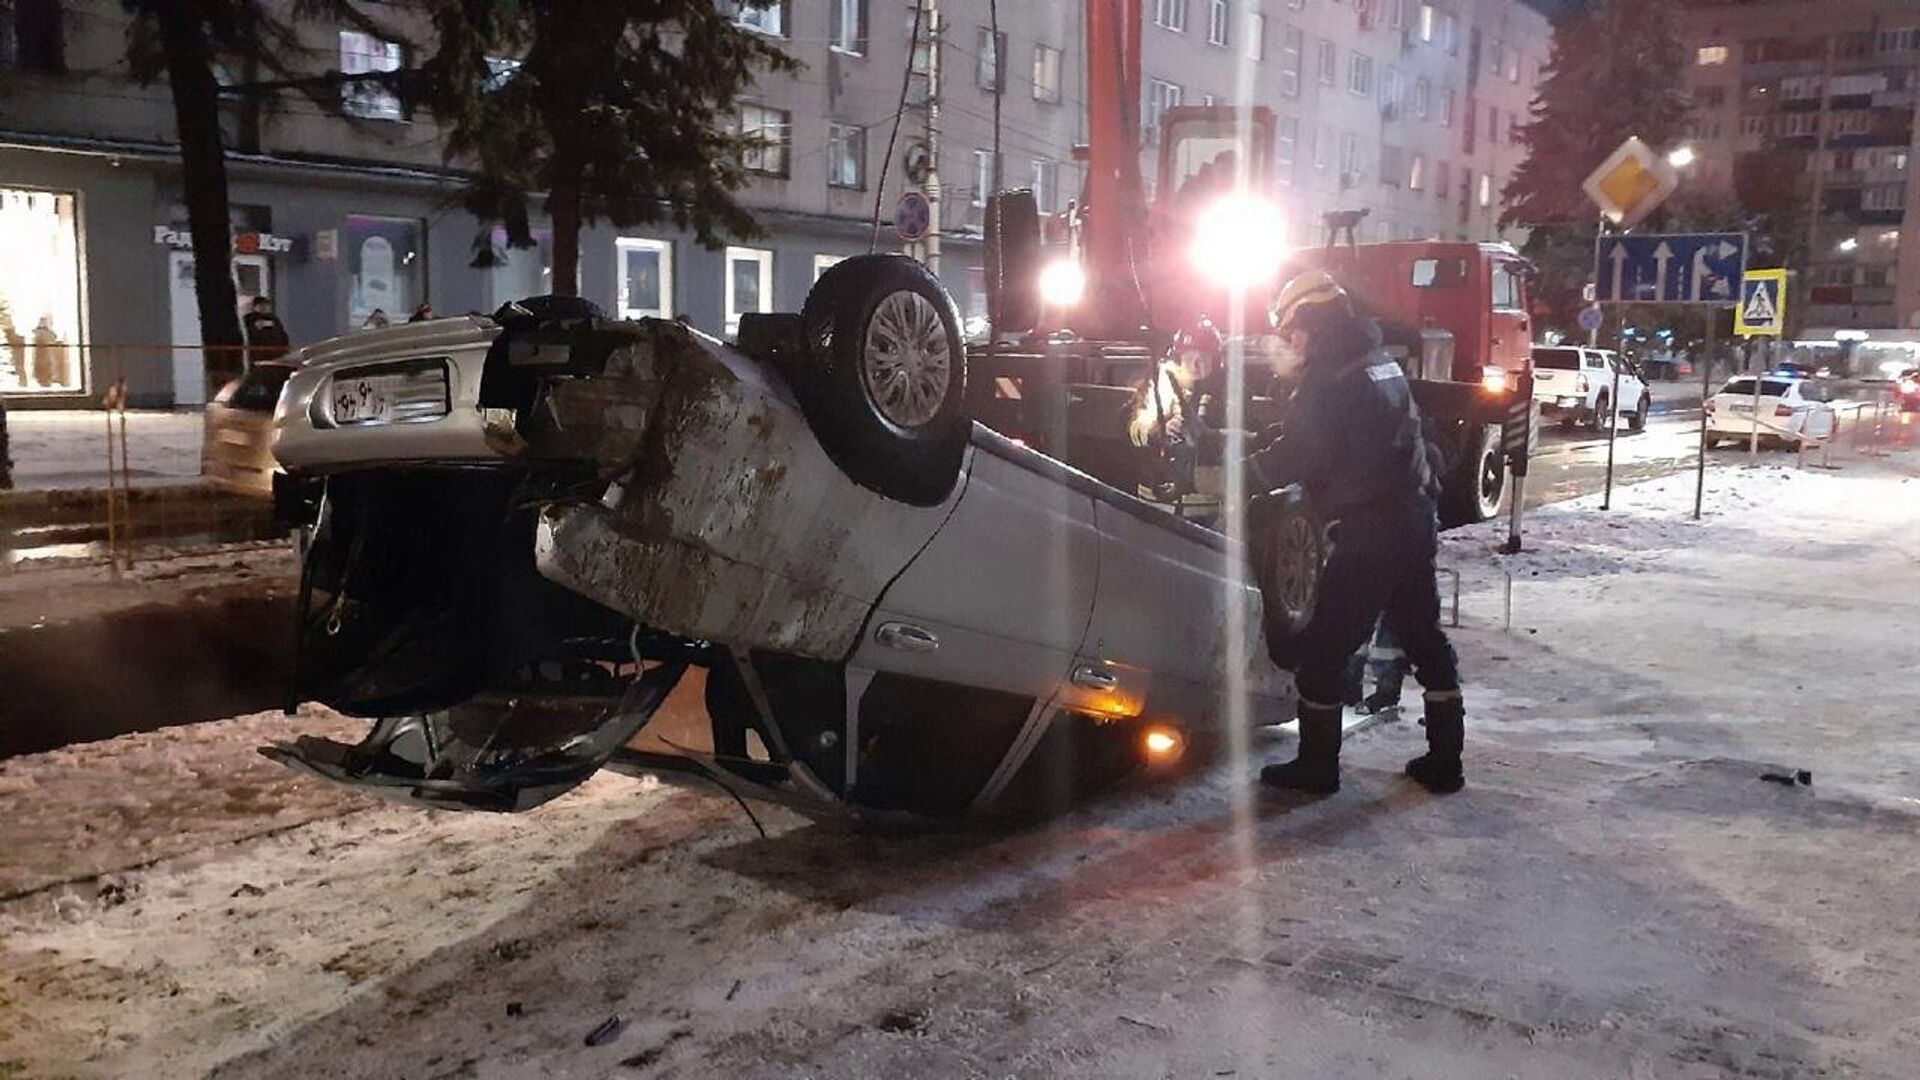 Автомобиль, упавший в яму на дороге в Курске - РИА Новости, 1920, 20.12.2021